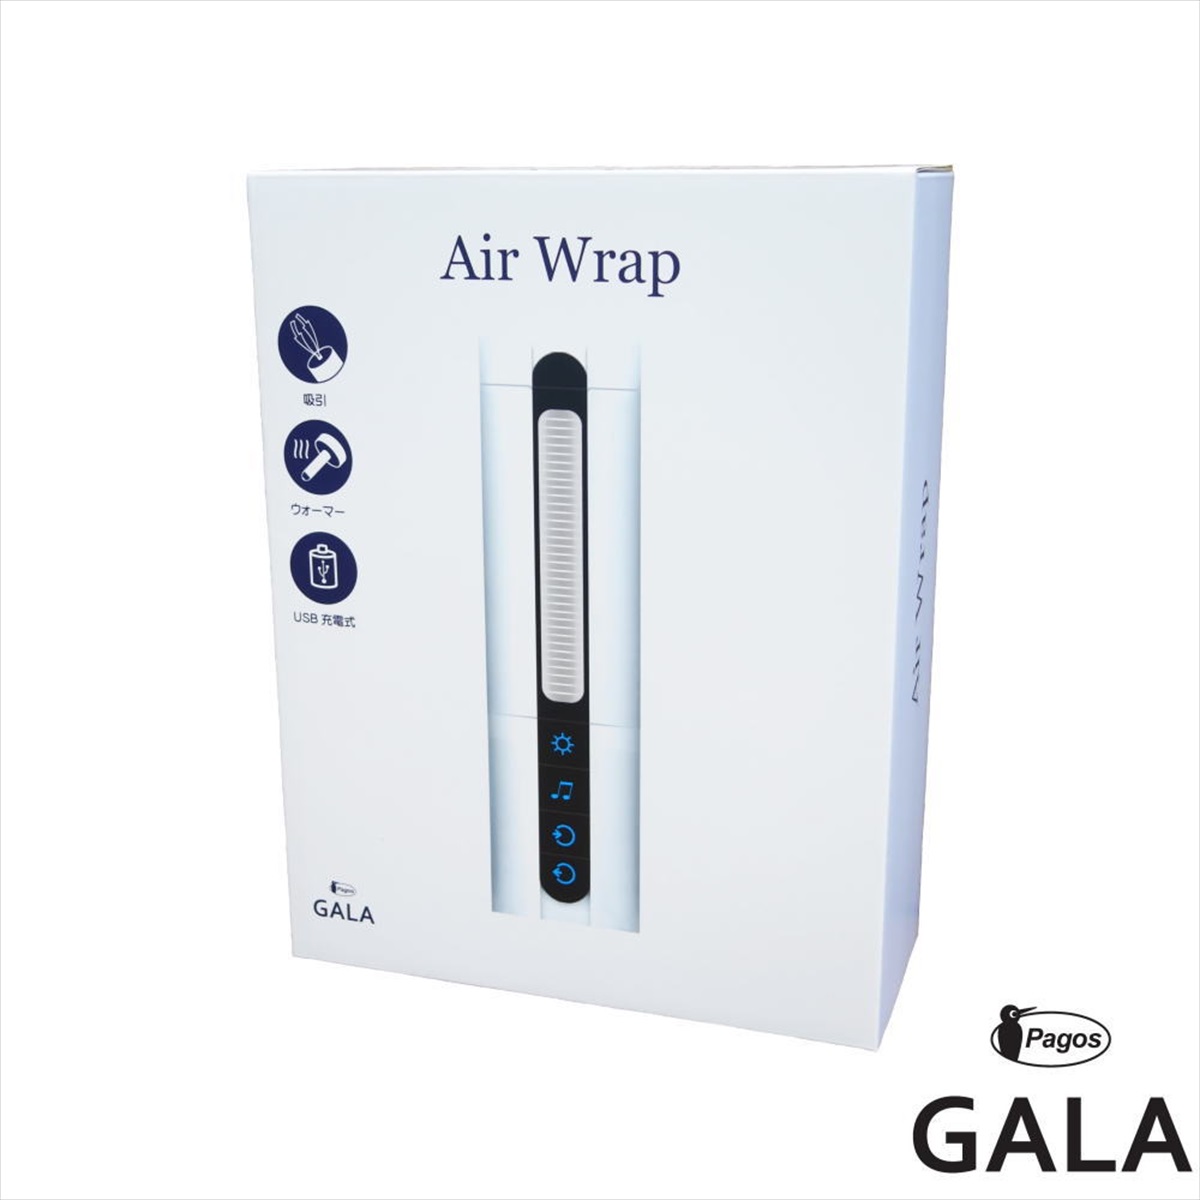 Air Wrap